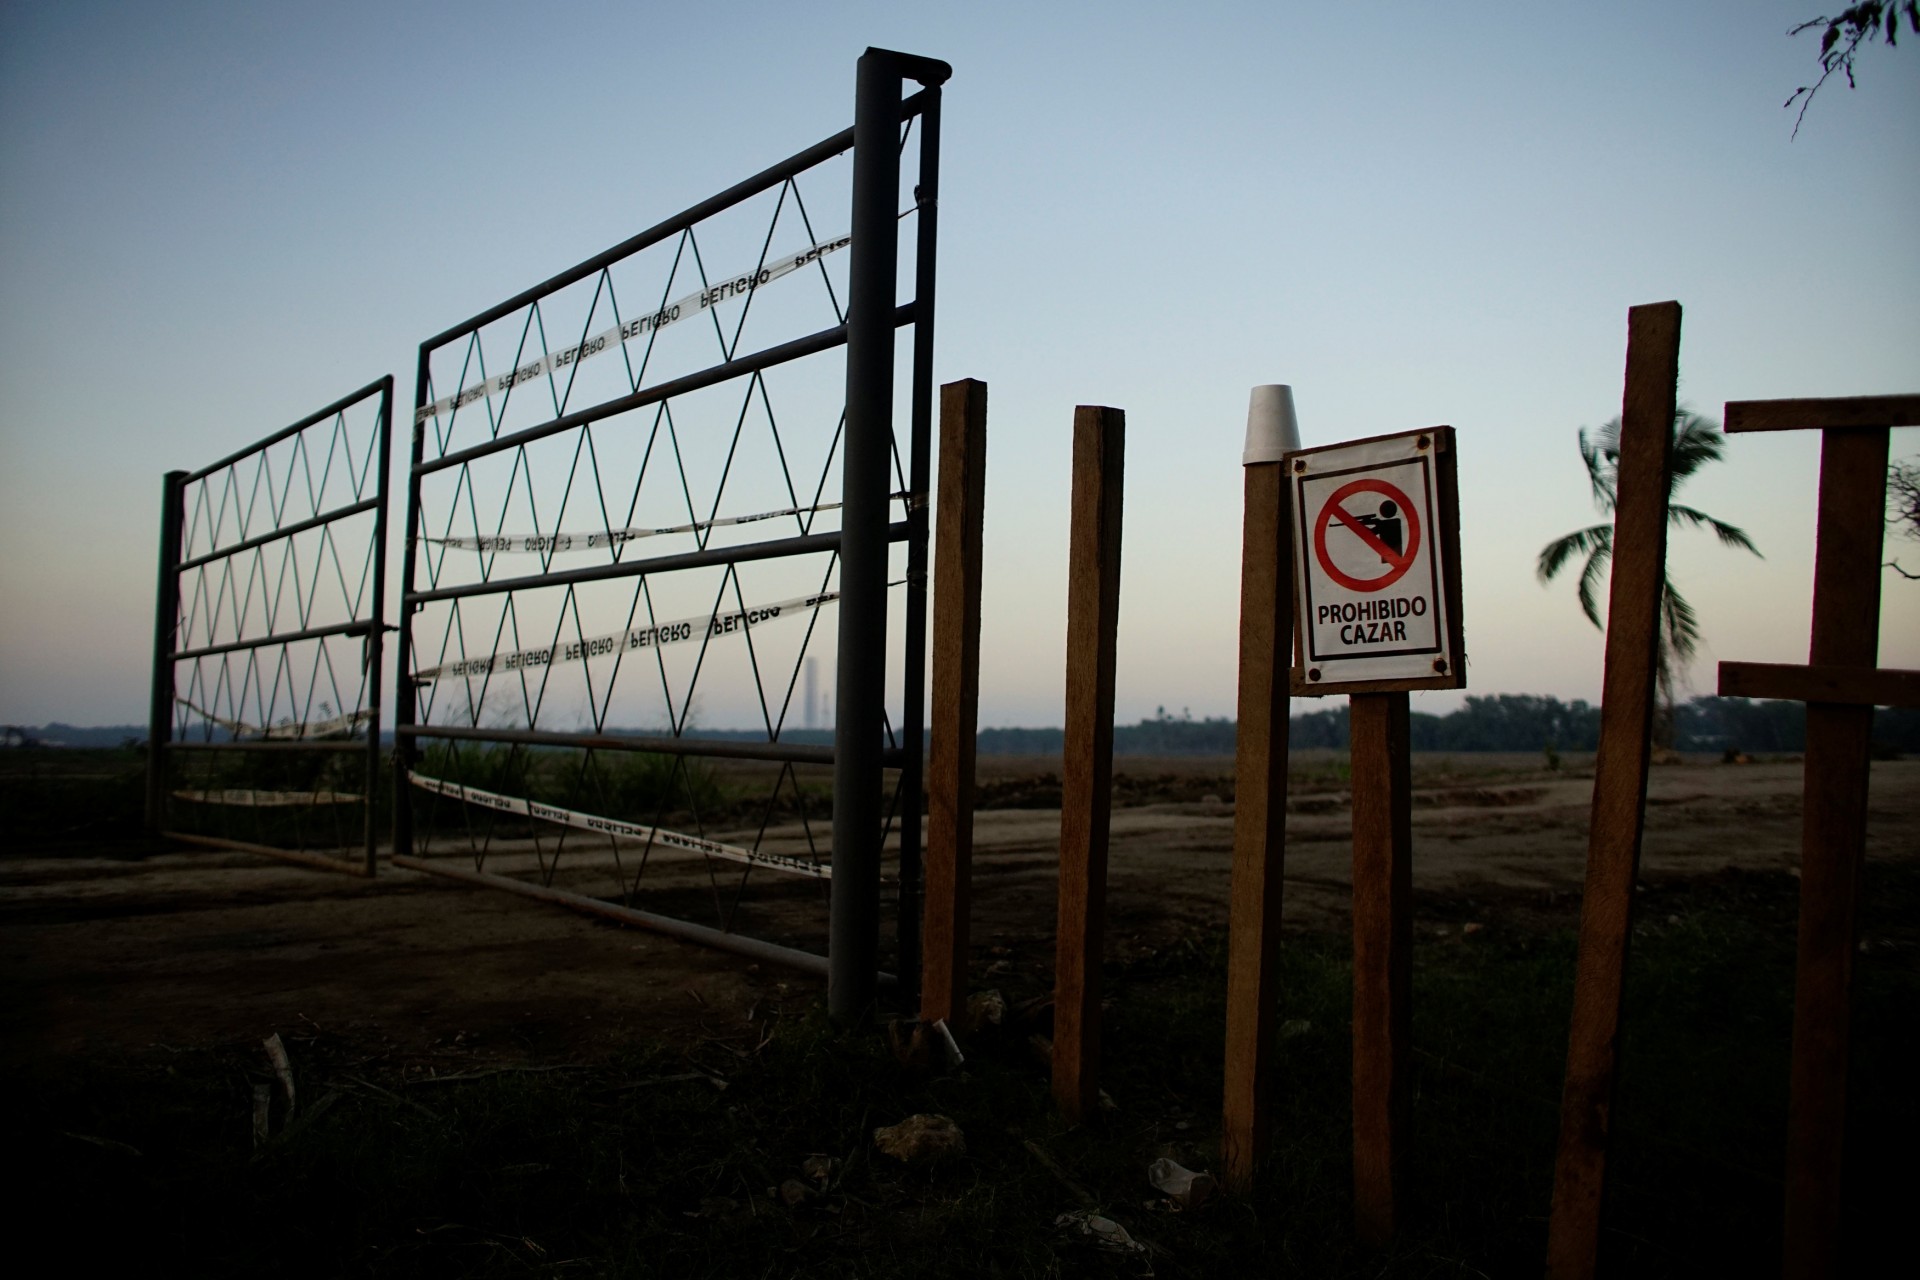 Un cartel que dice “Prohibido cazar” en español, se encuentra en la entrada de un área que pertenece a la compañía petrolera estatal Pemex, en la cual se planea construir una nueva refinería de petróleo en Paraiso, México, el 8 de diciembre de 2018.